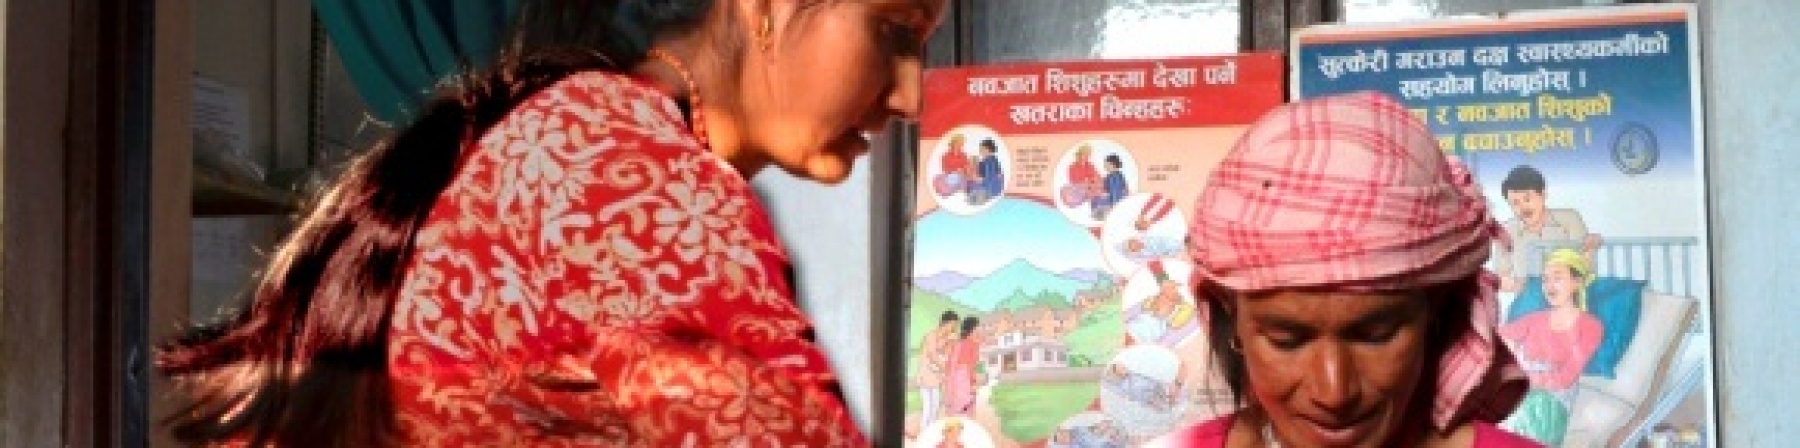 Le voci dal campo: "la buona nutrizione" in Nepal per sconfiggere la malnutrizione infantile